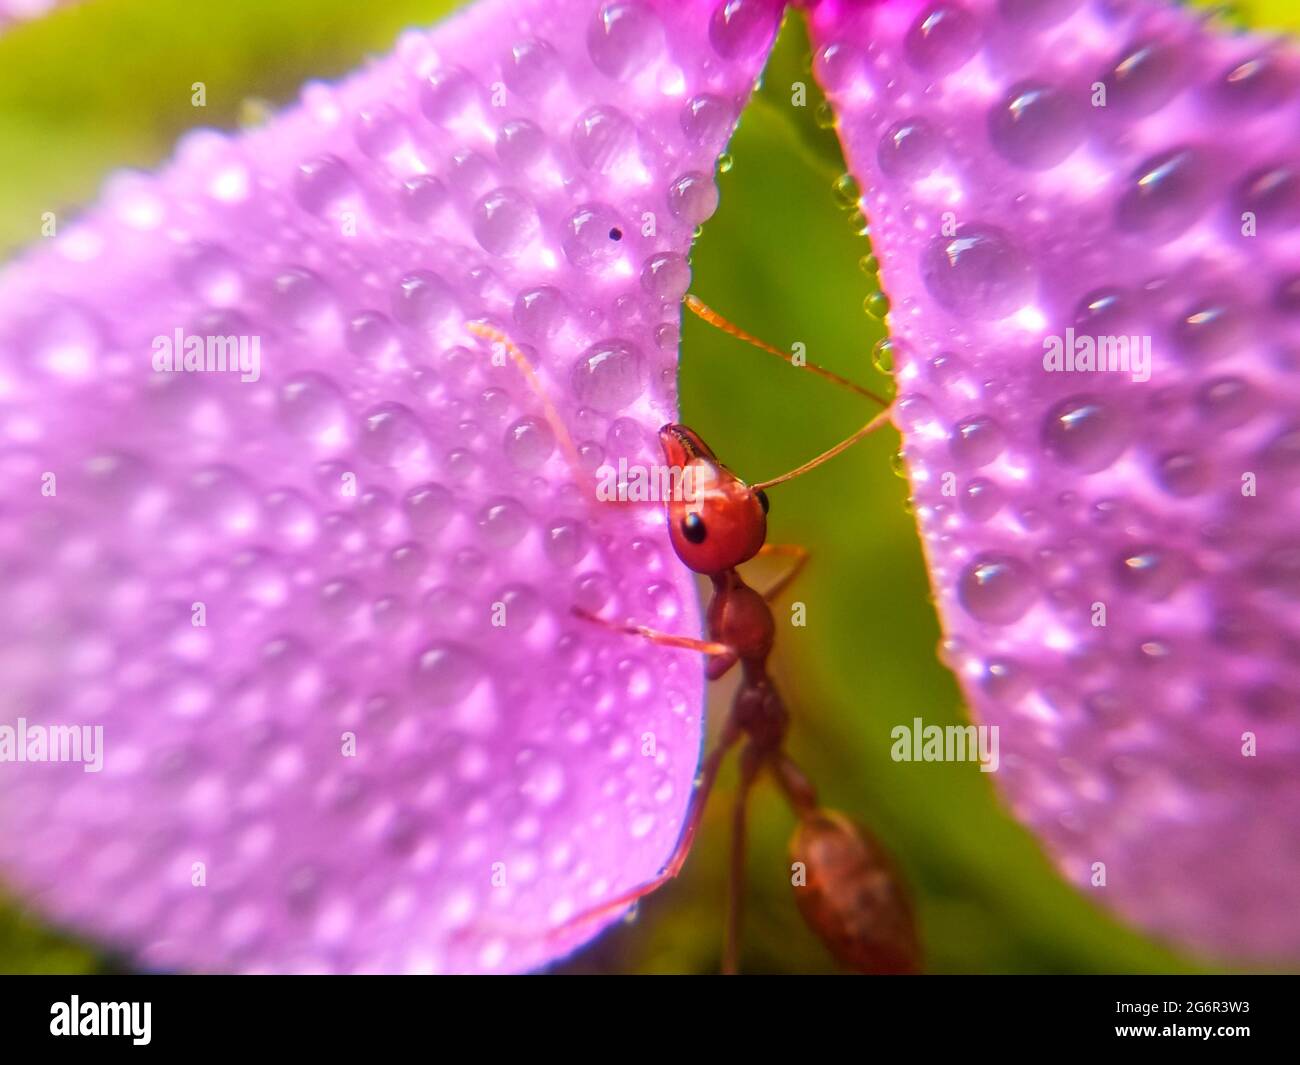 Formica rossa che raccoglie l'acqua sui petali di fiore con sfondo verde. Macro insetto di natura. Gocce di rugiada sui petali di fiori. Foto Stock